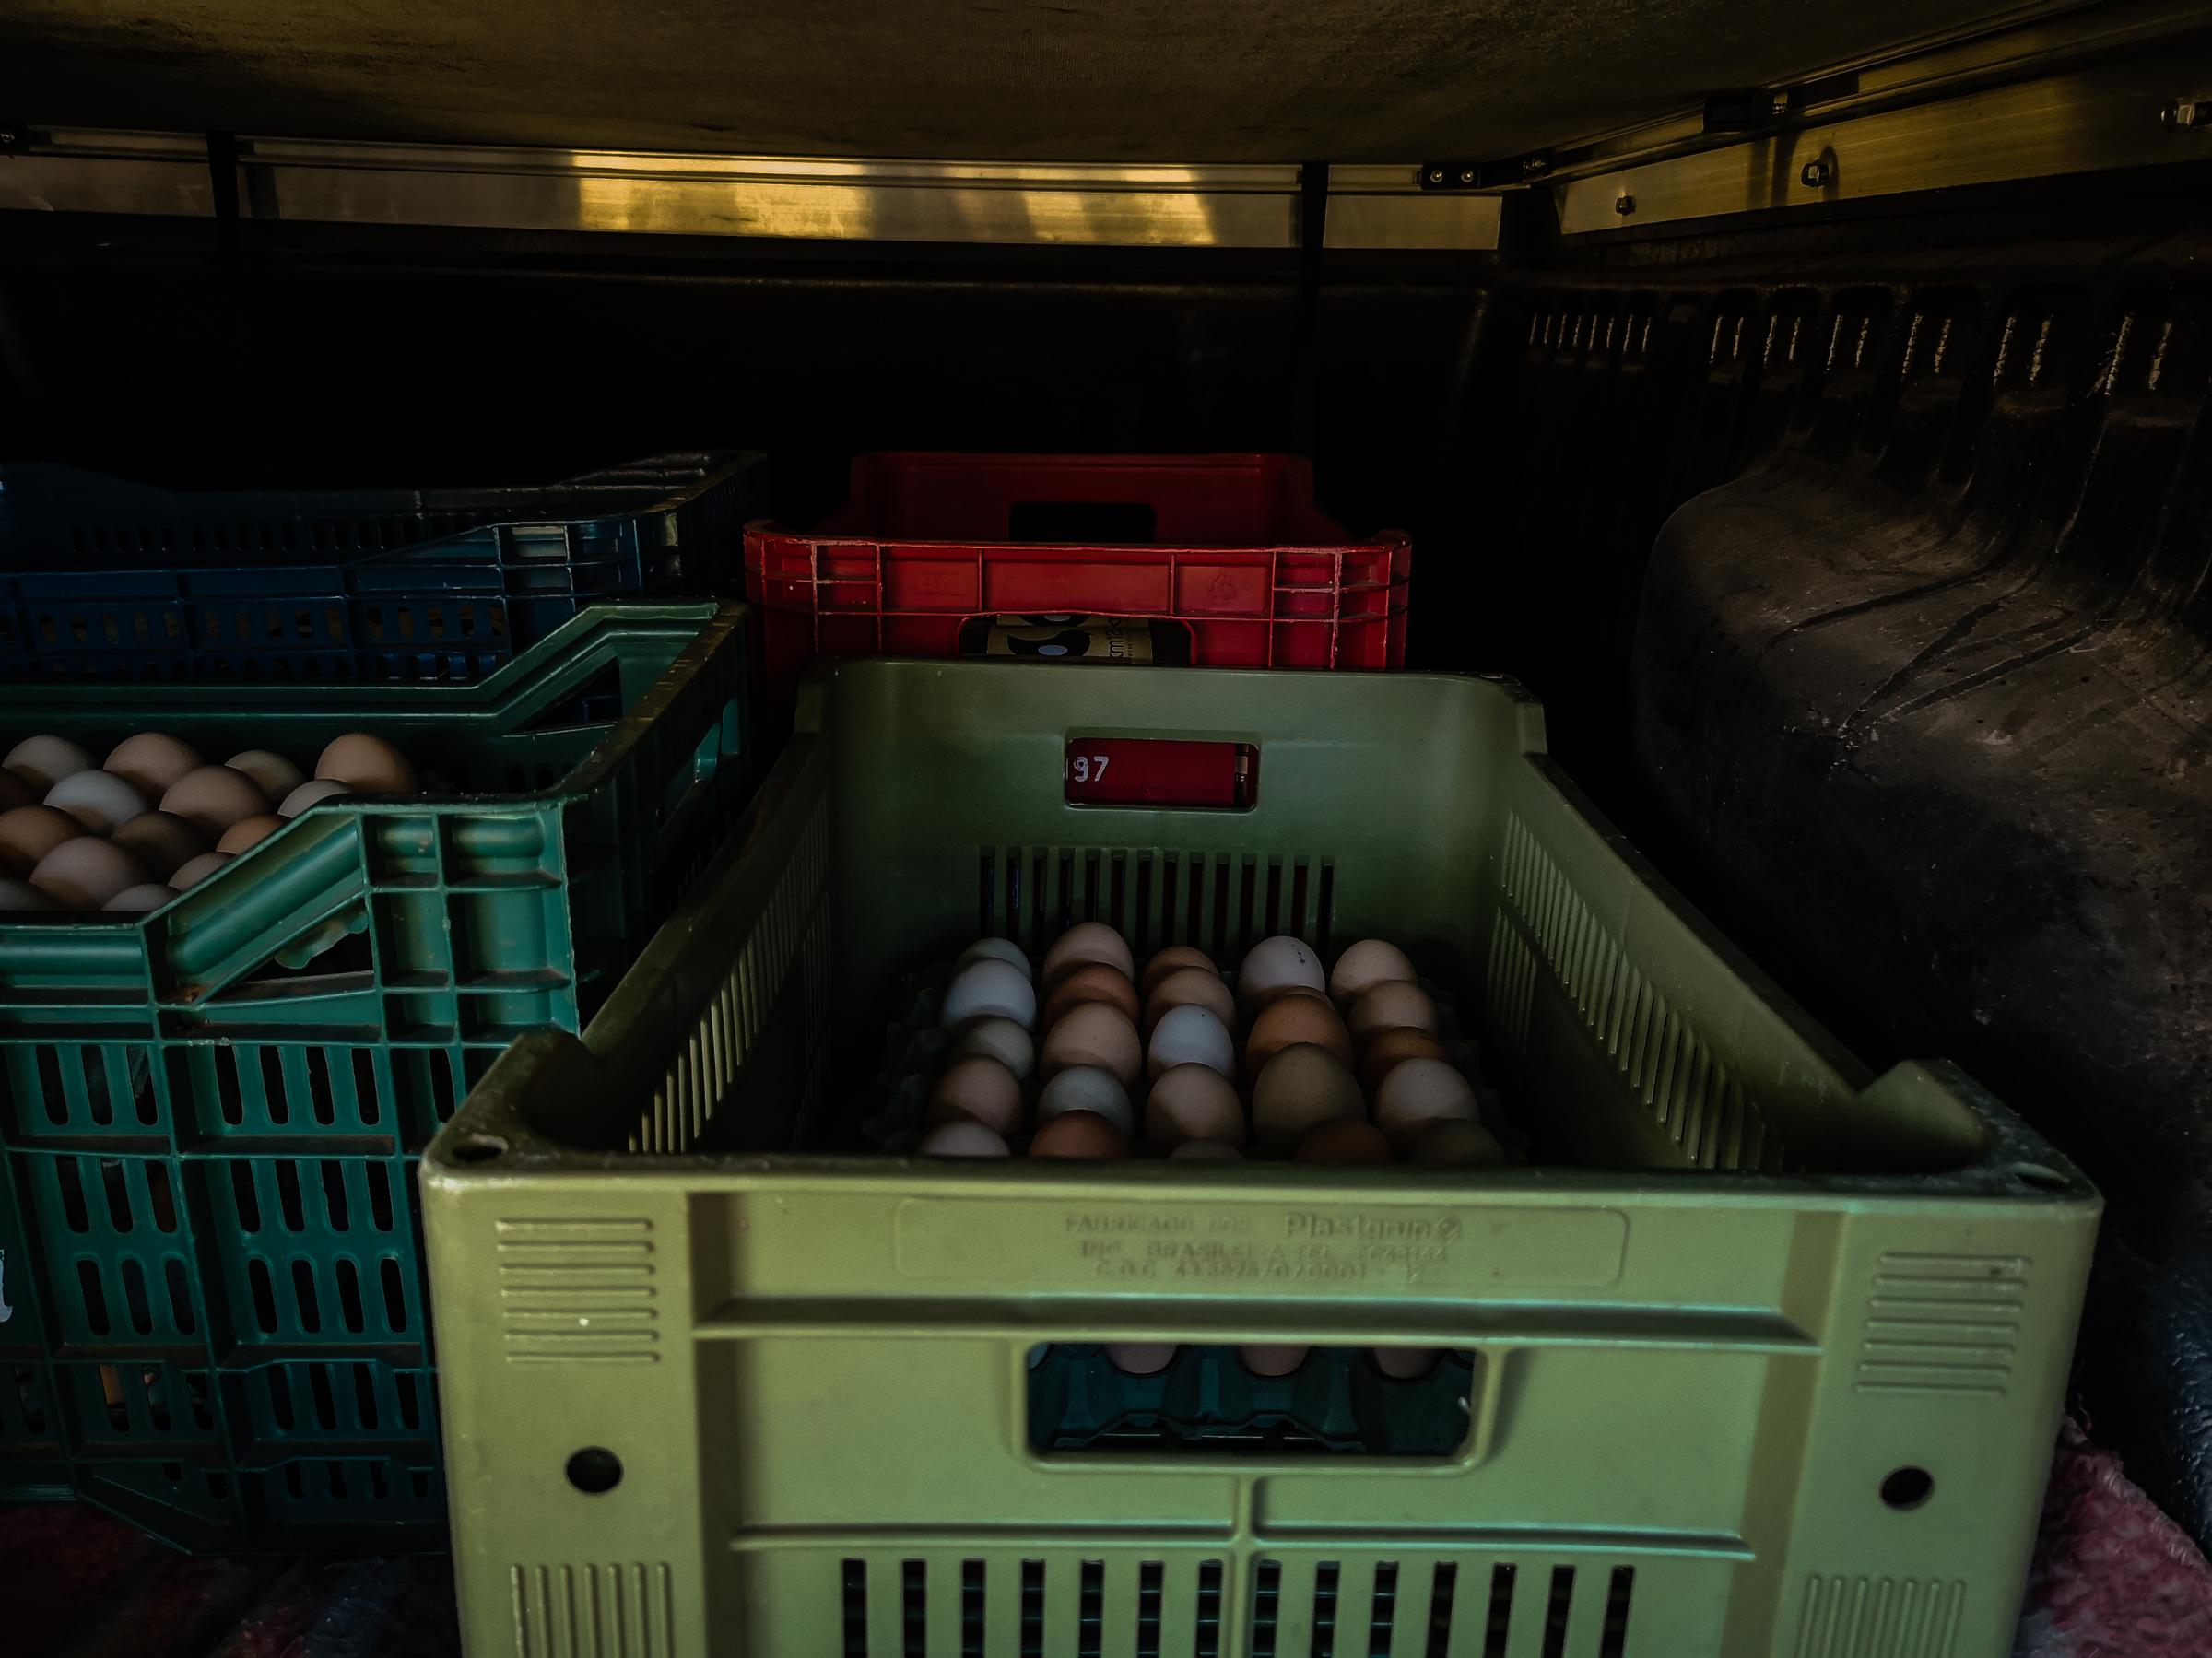 Life of a chicken farm during the Covid-19 pandemic in Brazil - Marco dirige para entregar seus ovos caipiras em um...